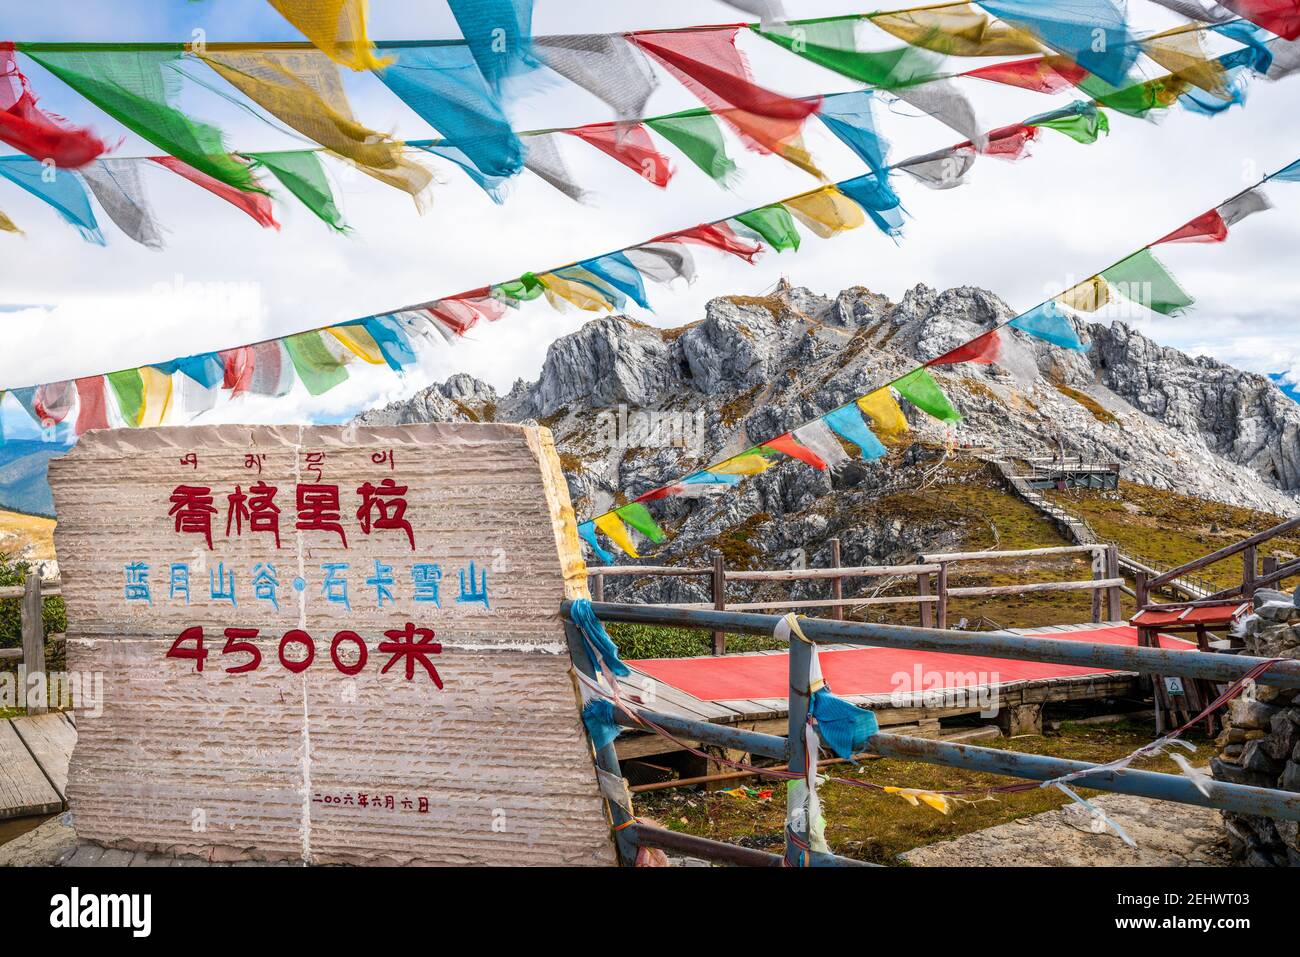 Signe et vue du sommet de la montagne de neige de Shika à Shangri-la Yunnan Chine (traduction : Vallée de la lune bleue , sommet de la montagne de neige de Shika ) Banque D'Images